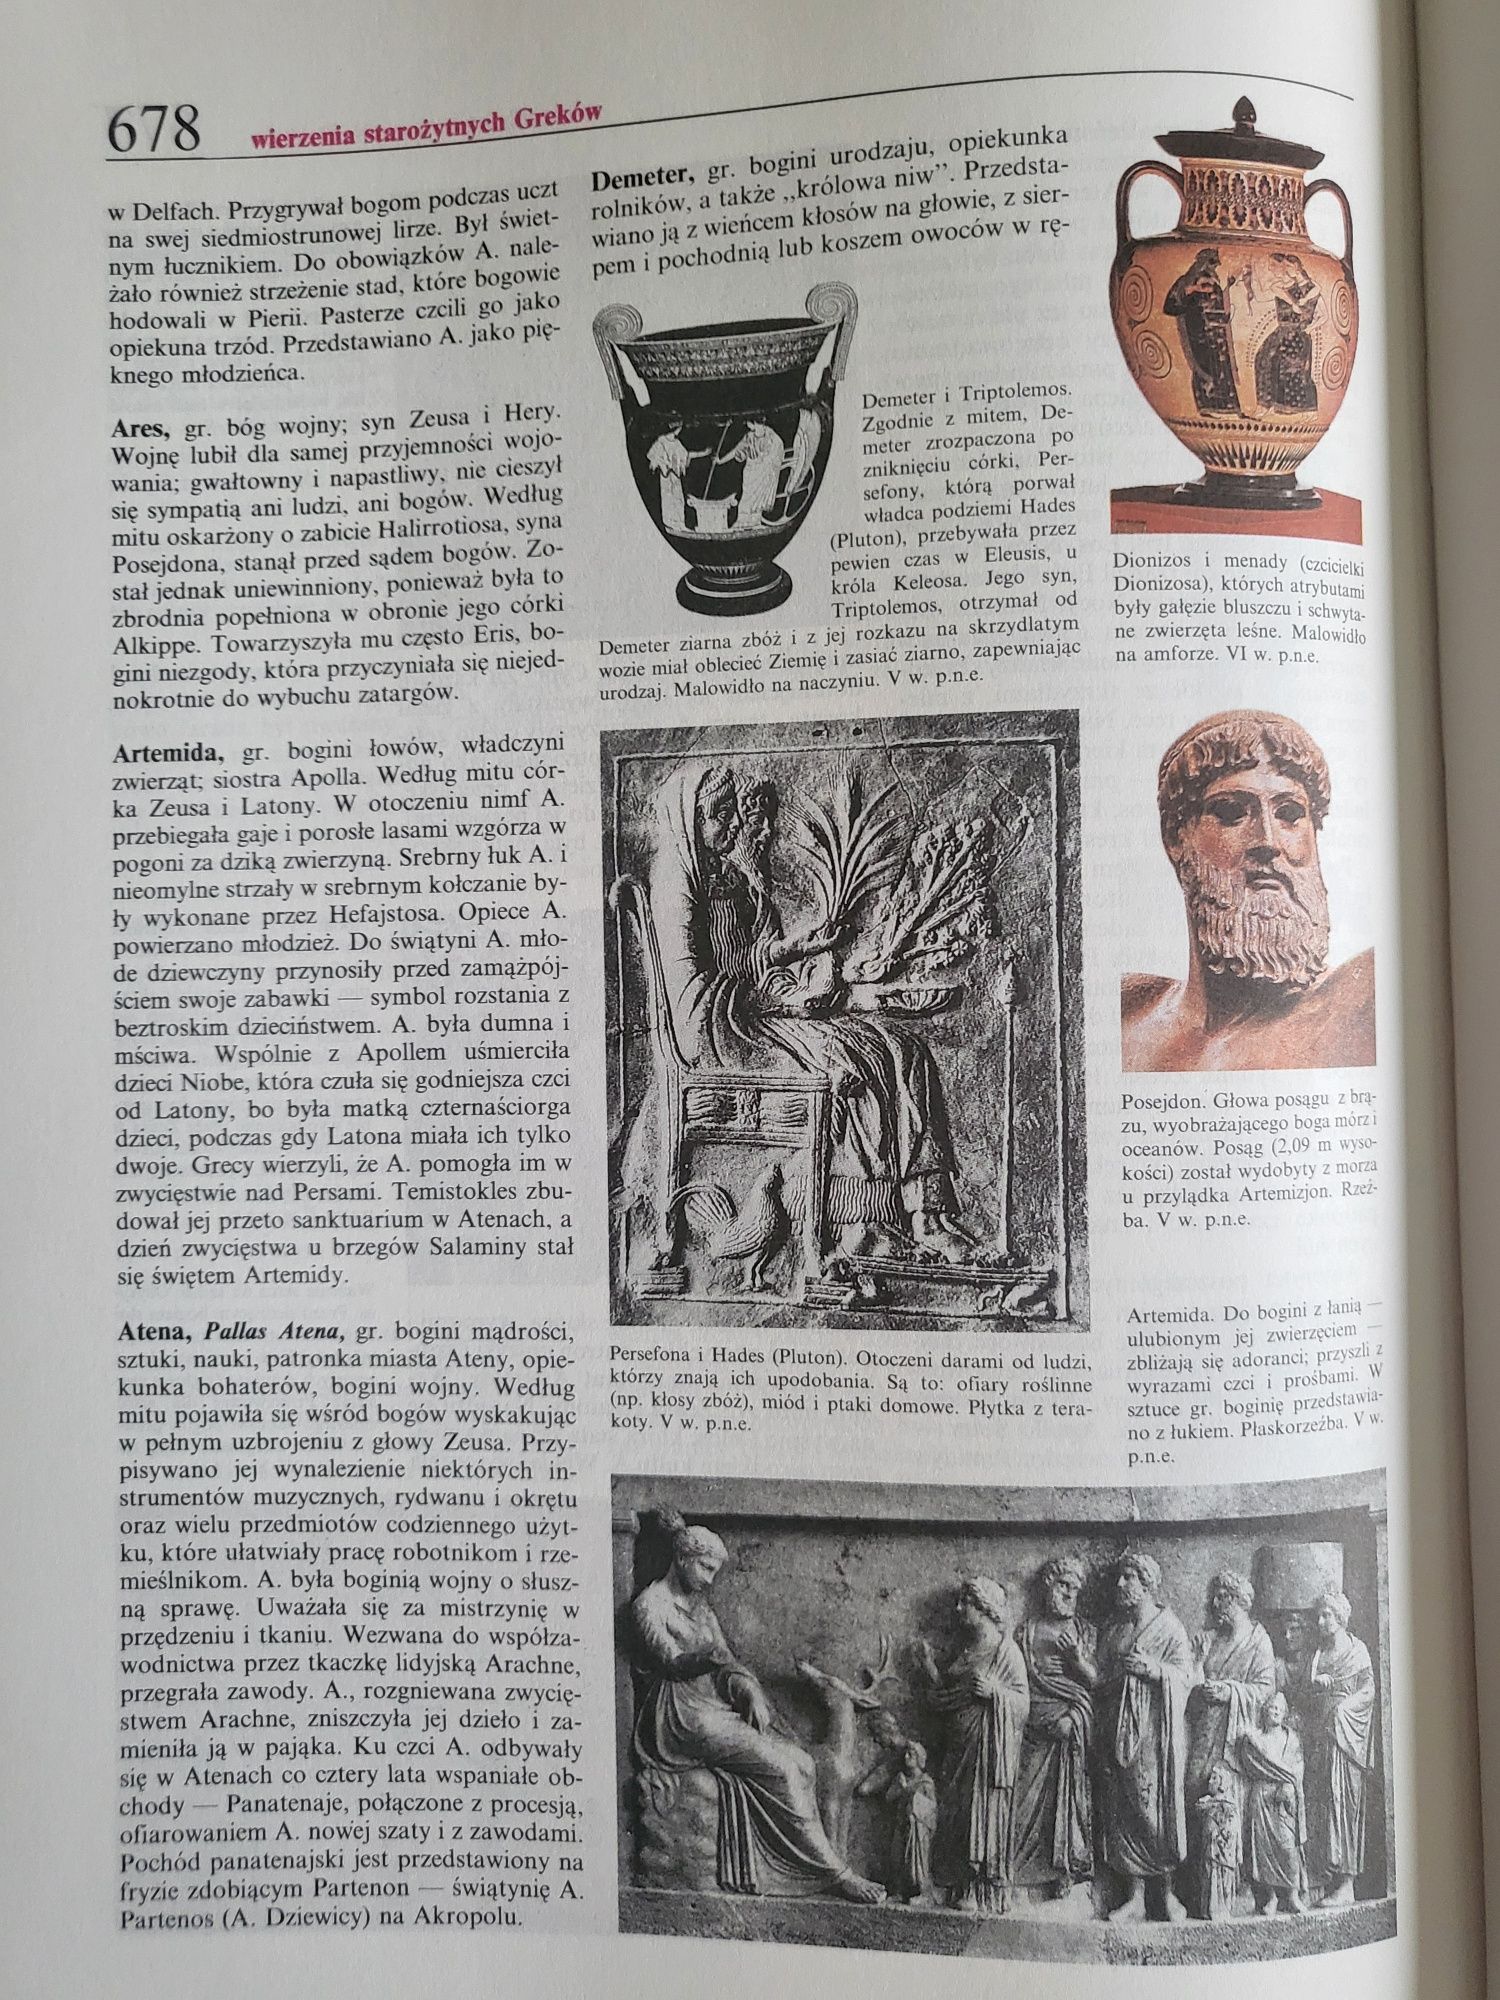 Encyklopedia szkolna historia